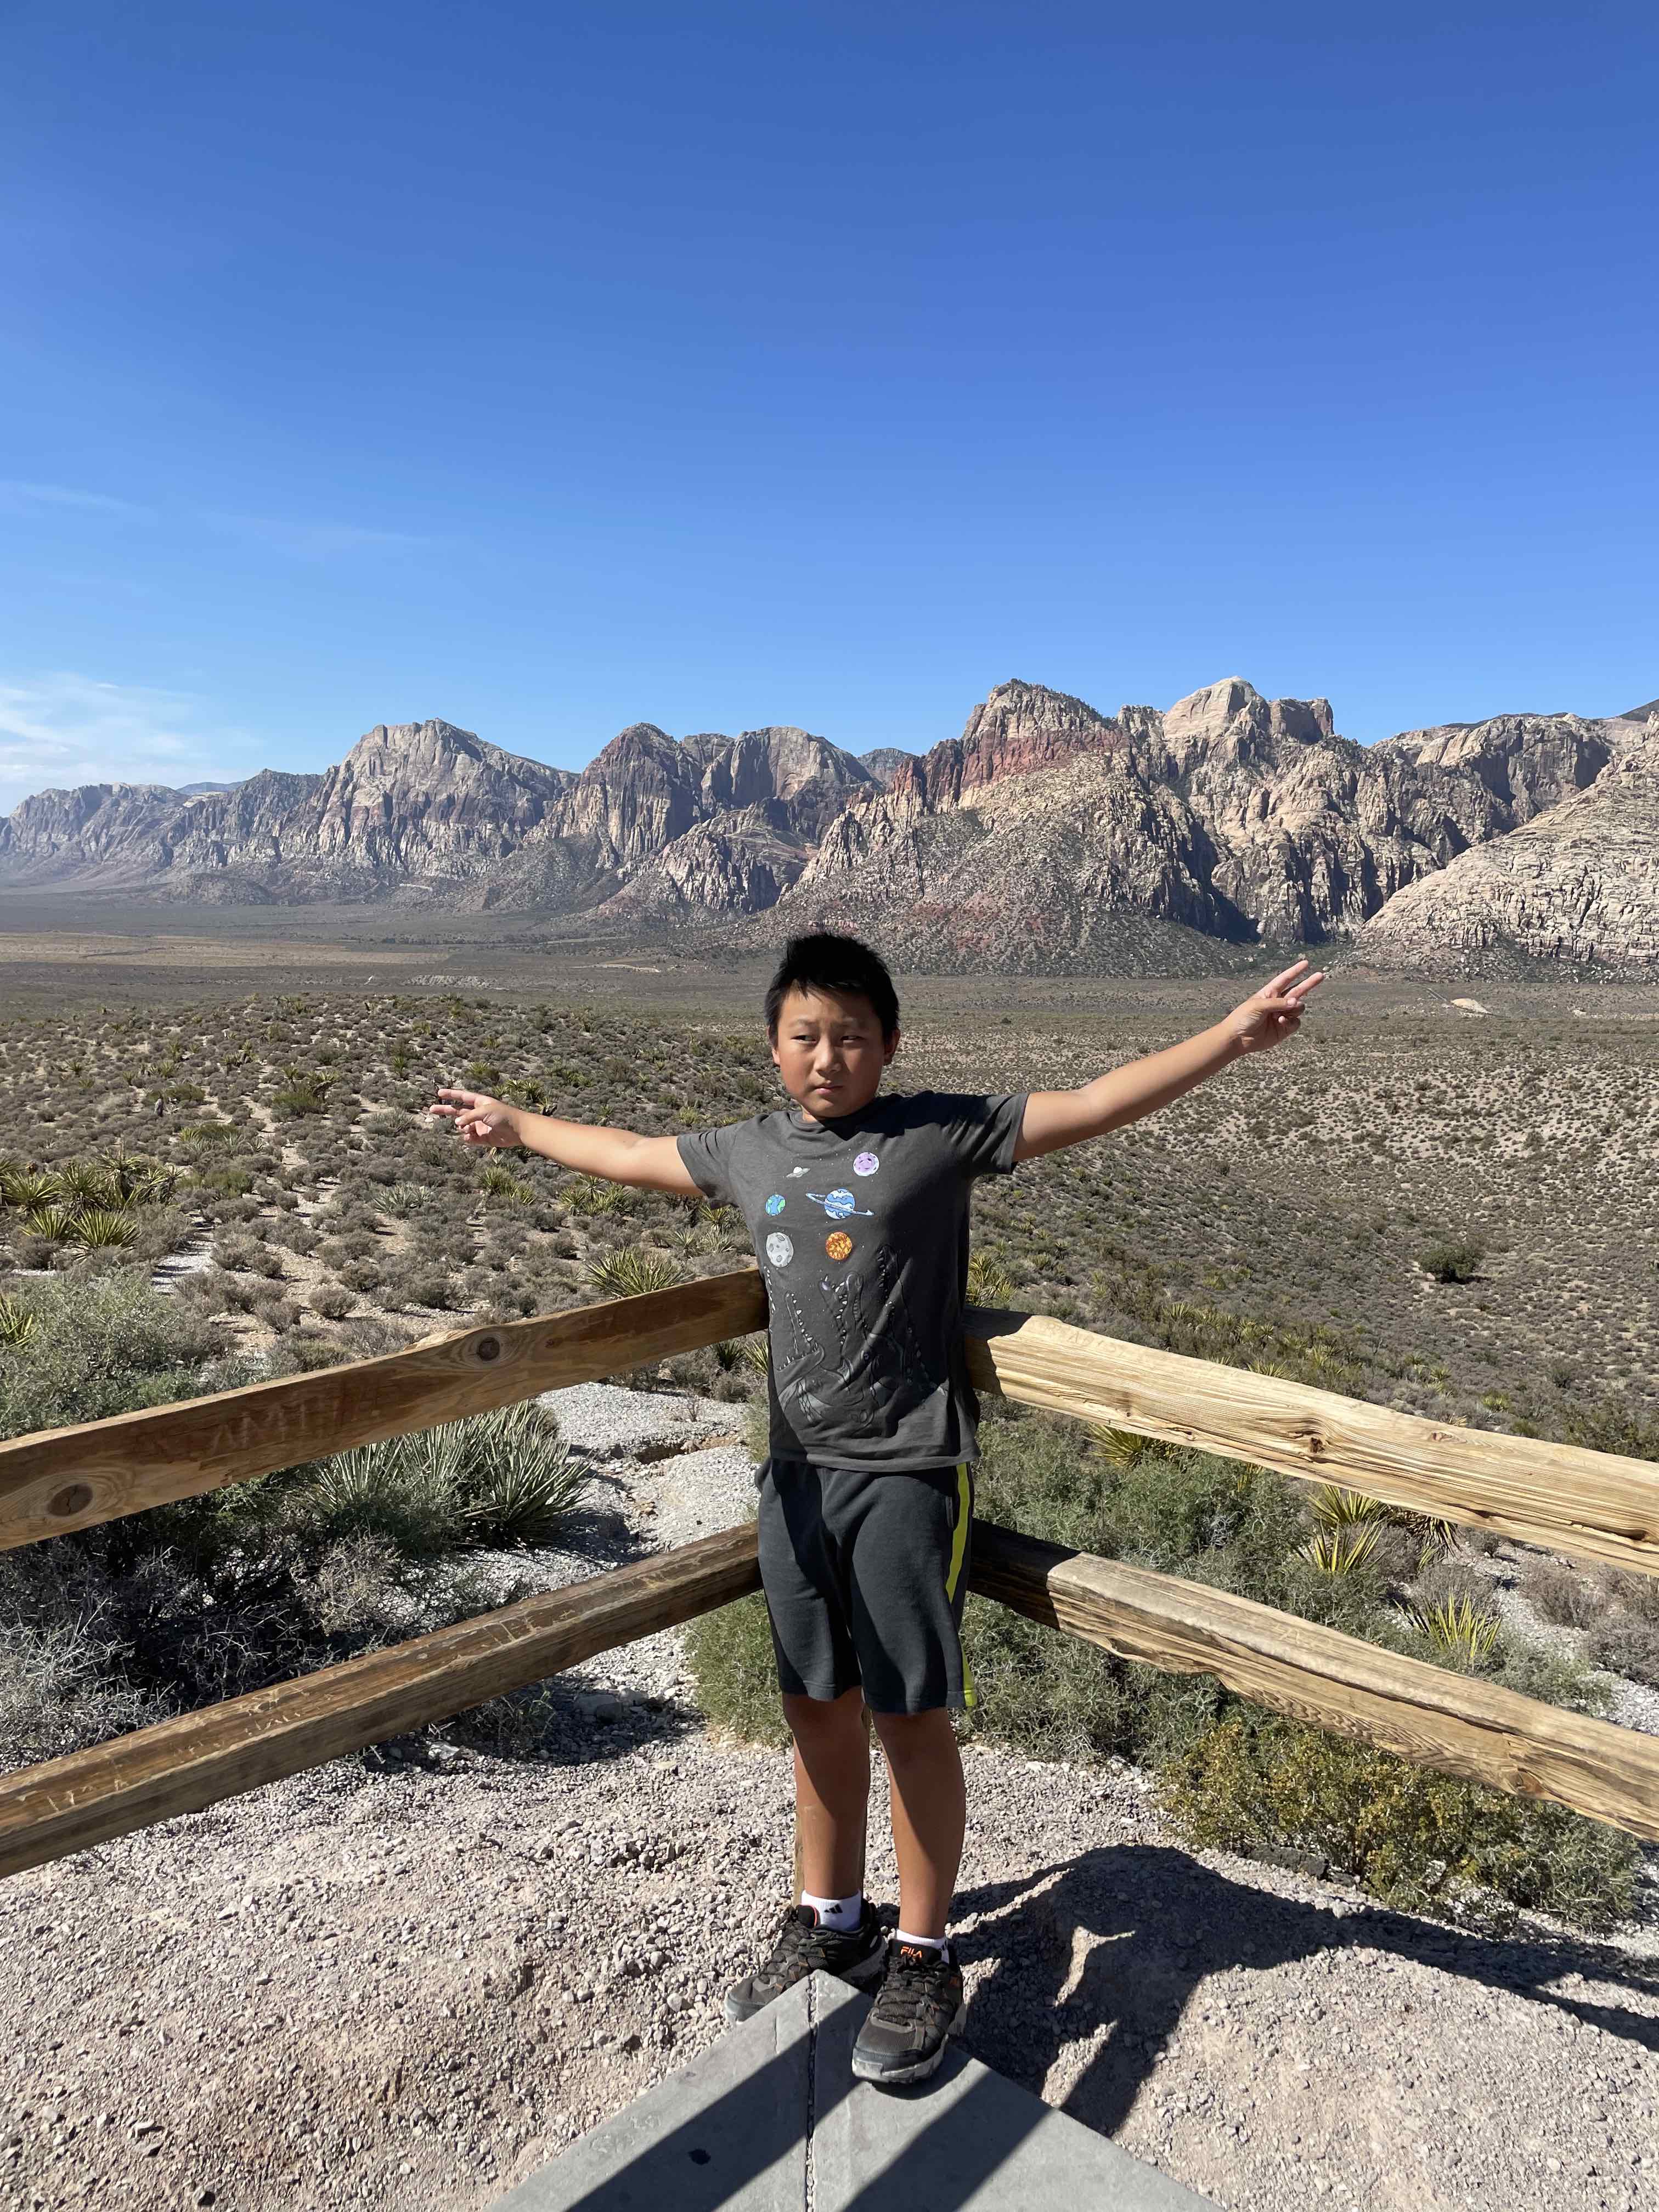 Max at Red Rock canyon